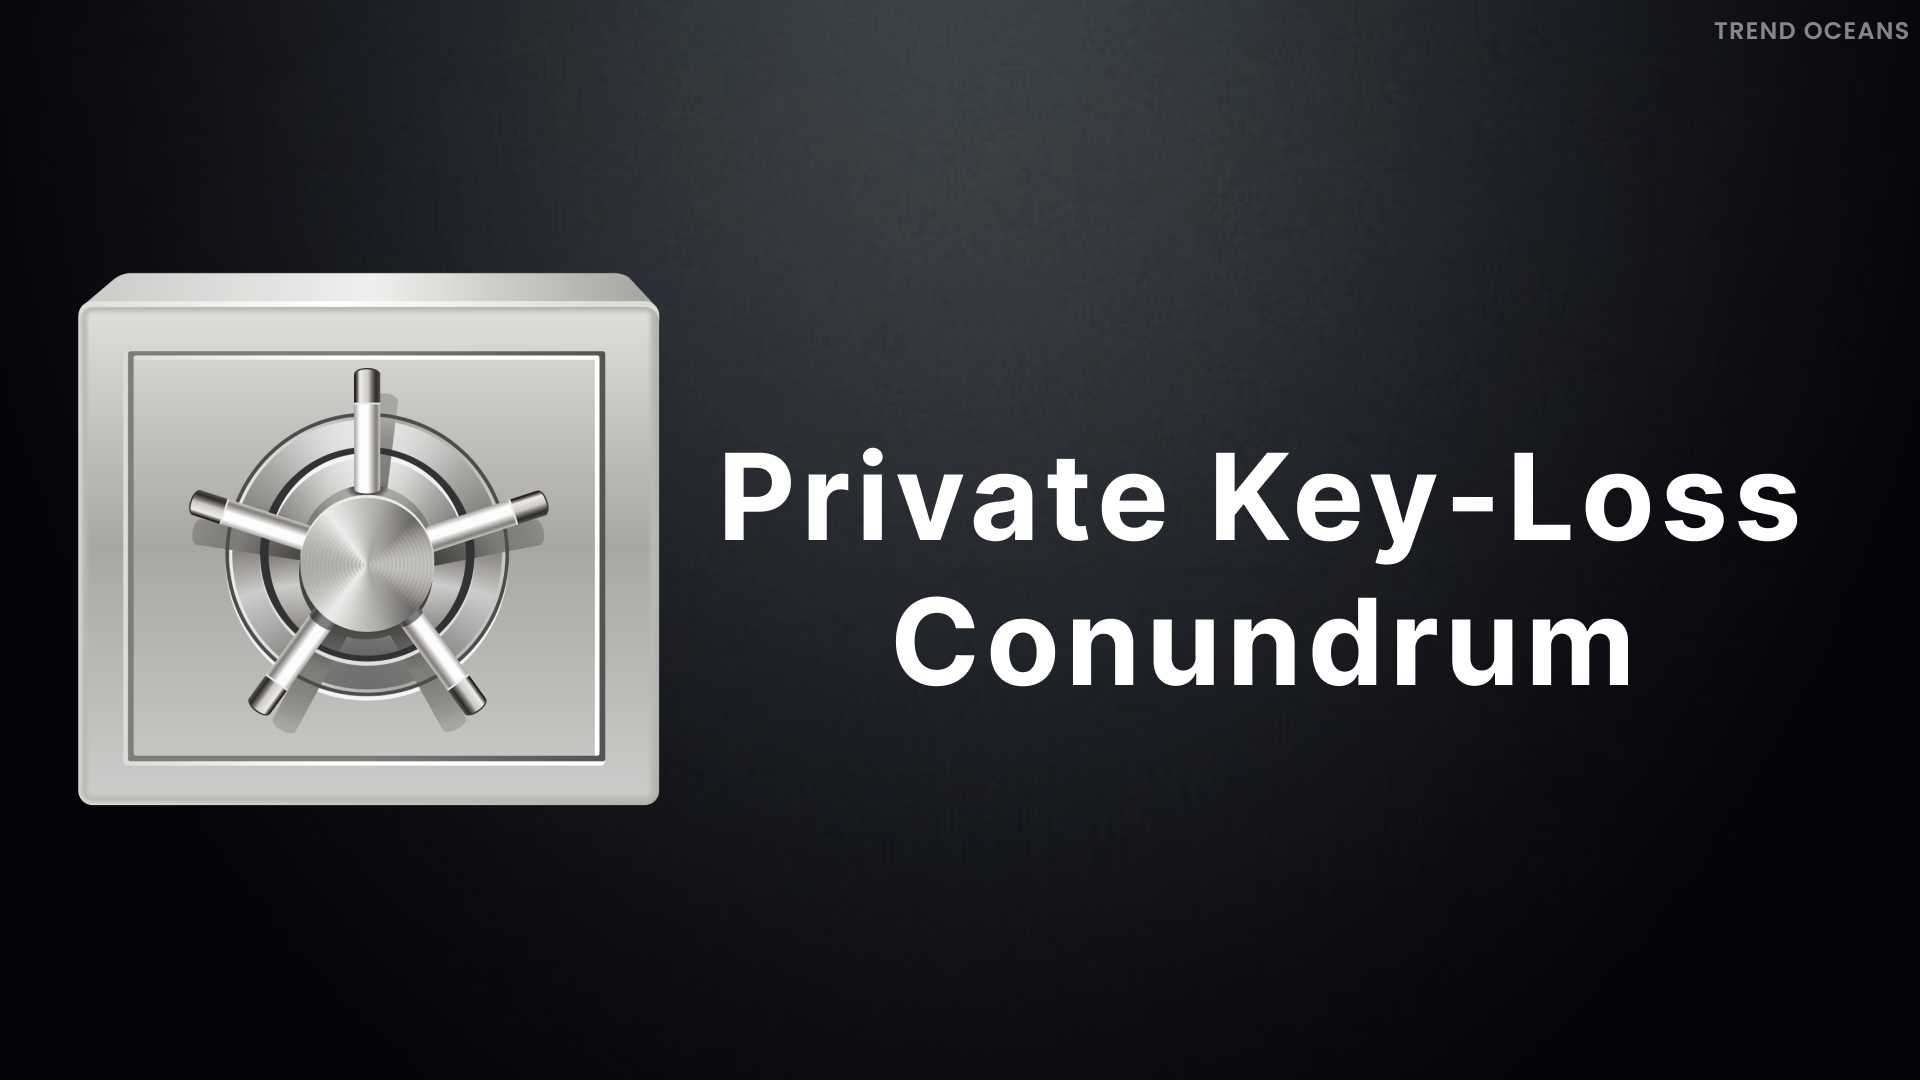 Private Key-Loss Conundrum